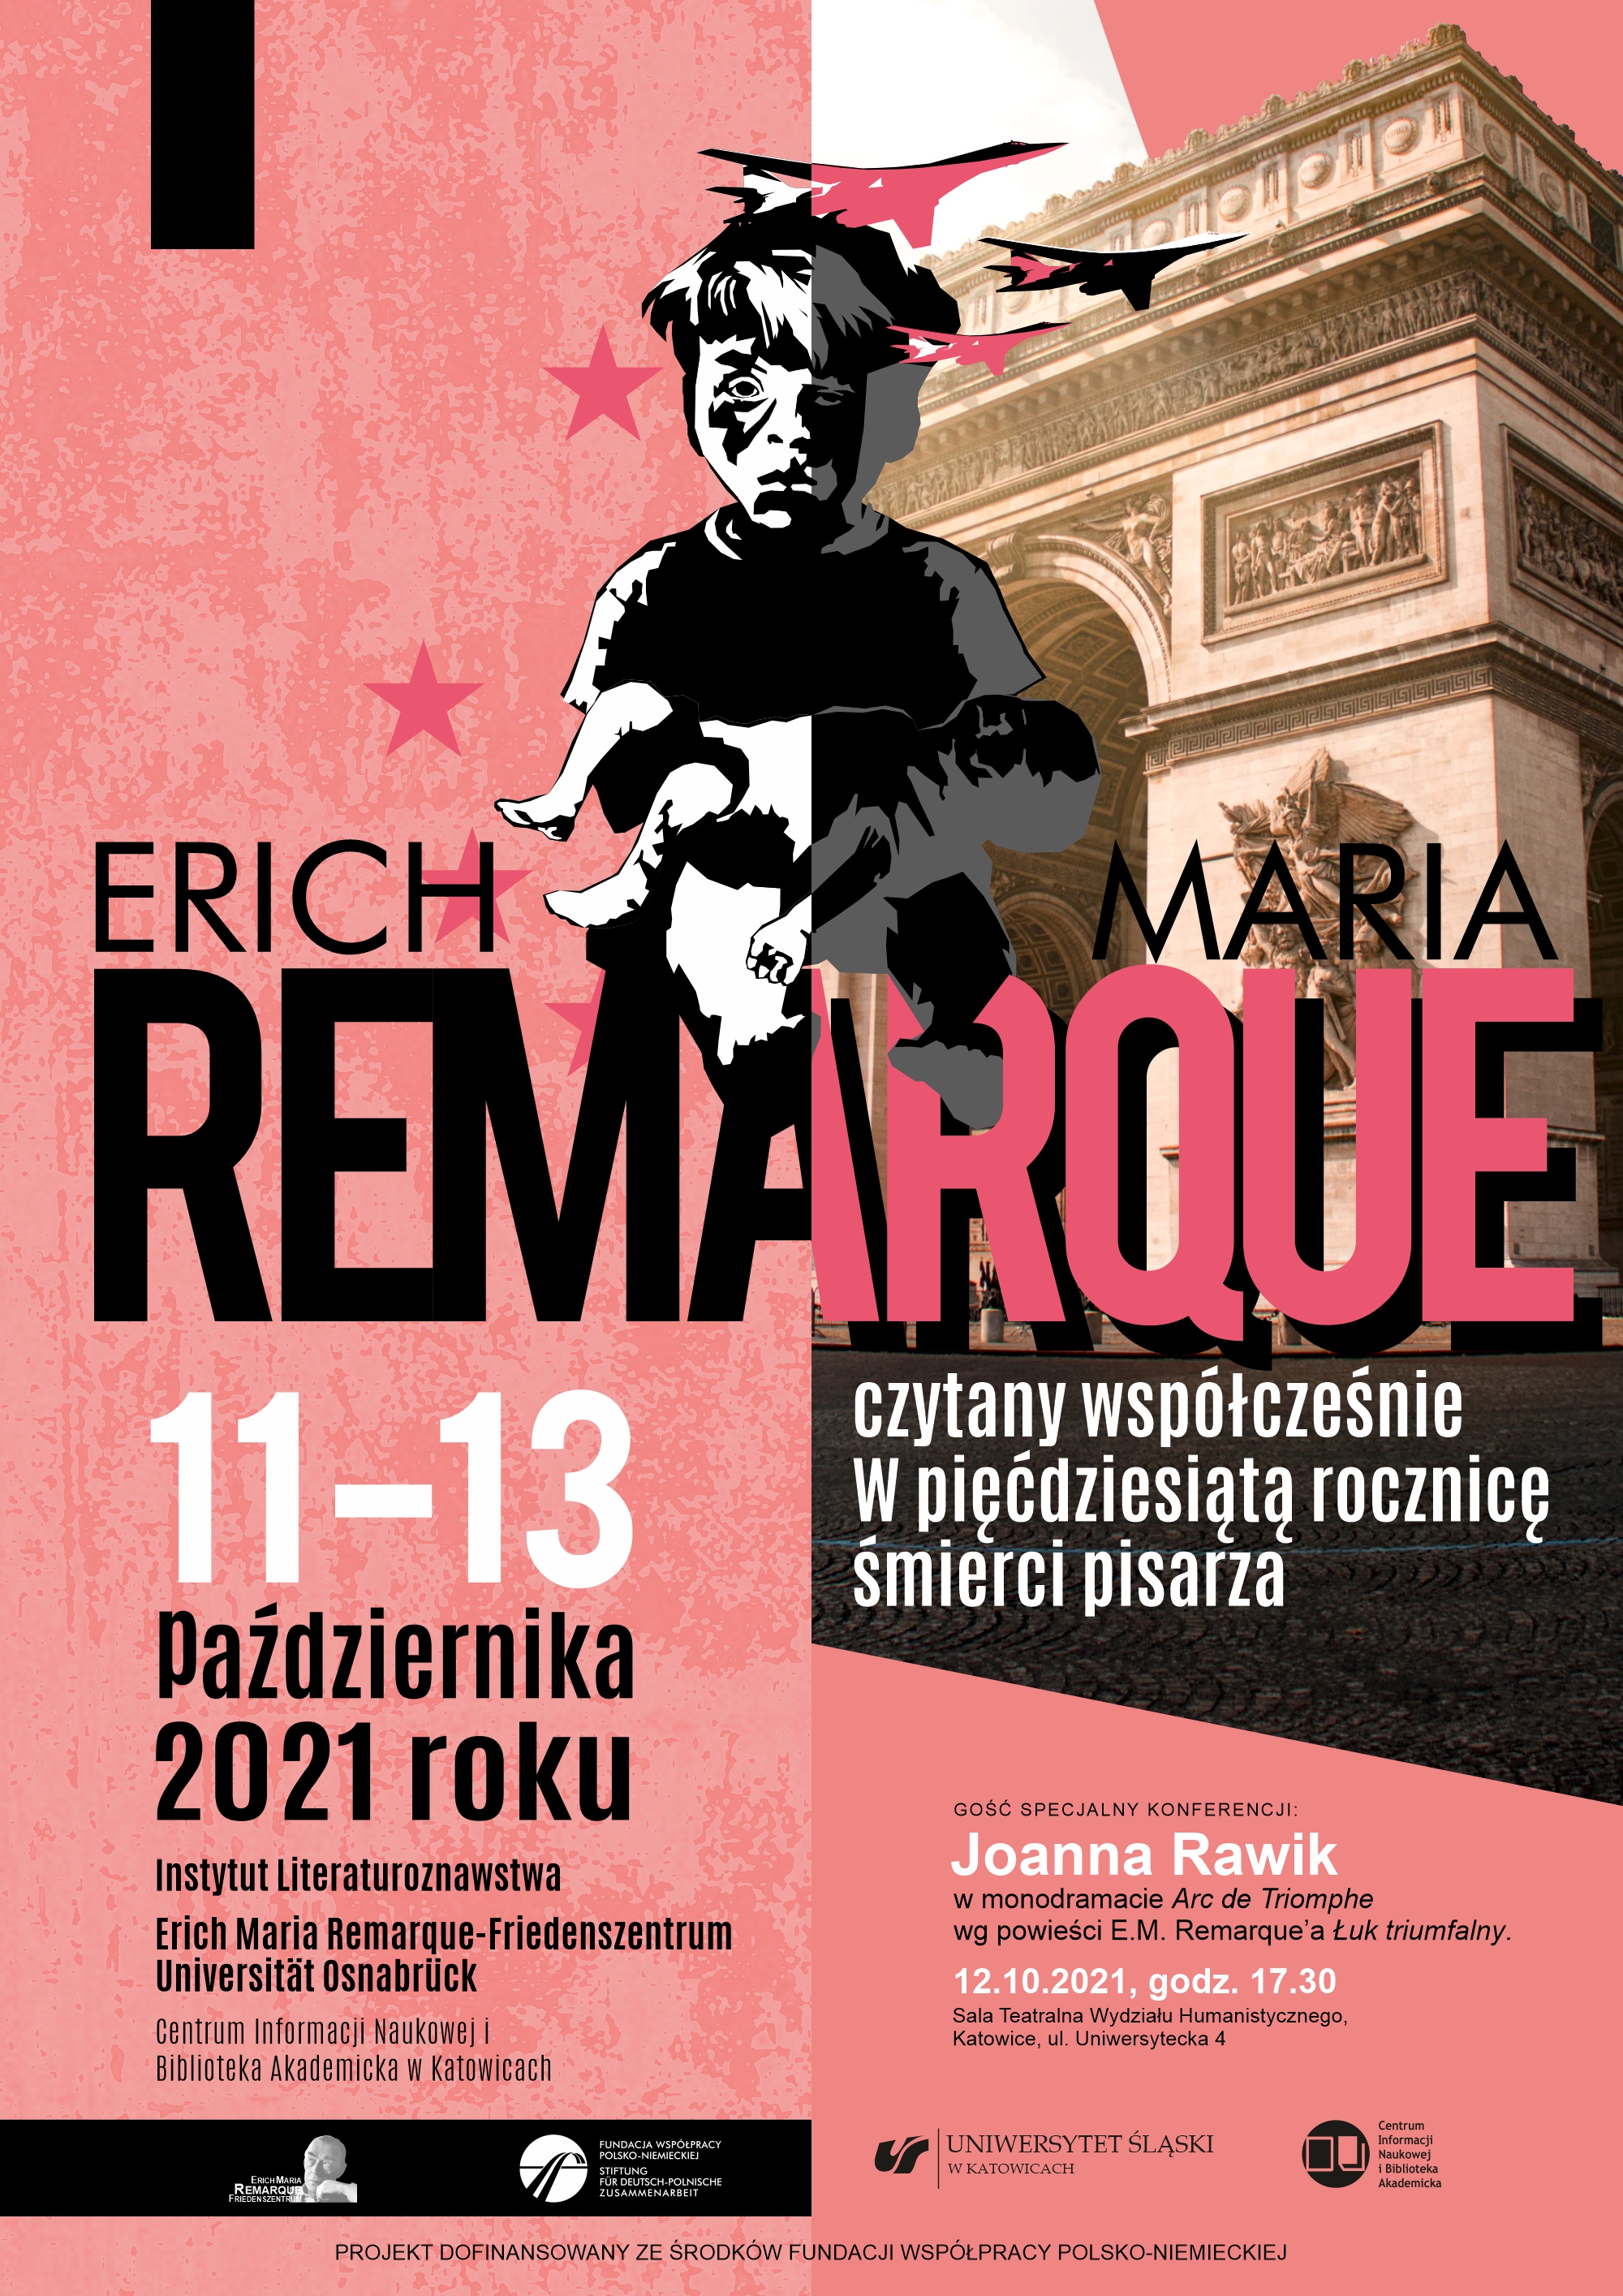 plakat promujący wydarzenie Erich Maria Remarque czytany współcześnie w pięćdziesiątą rocznicę śmierci pisarza